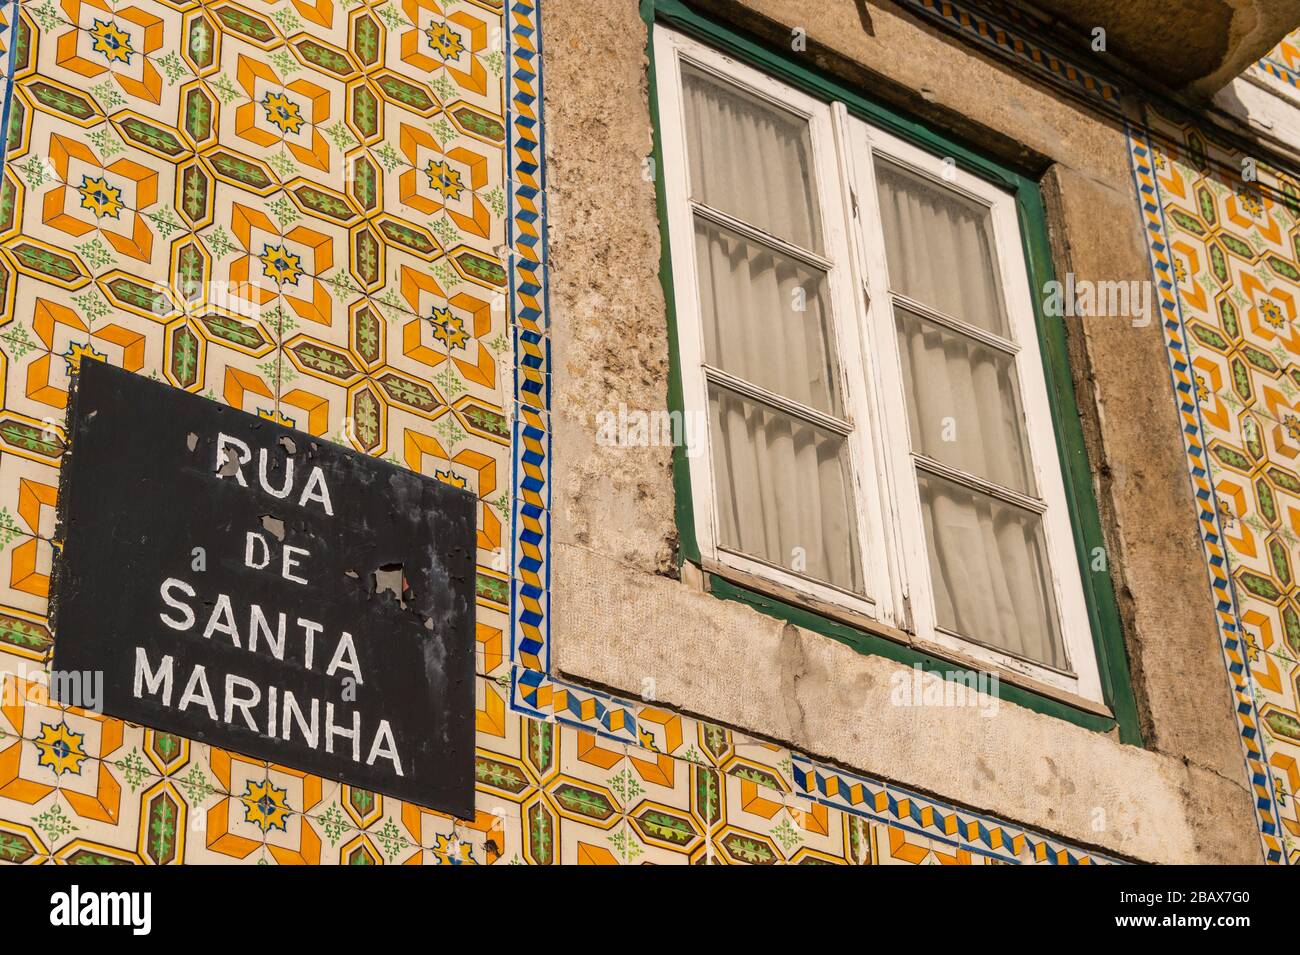 Lisbon house facade with azulejos ceramic tiles Stock Photo